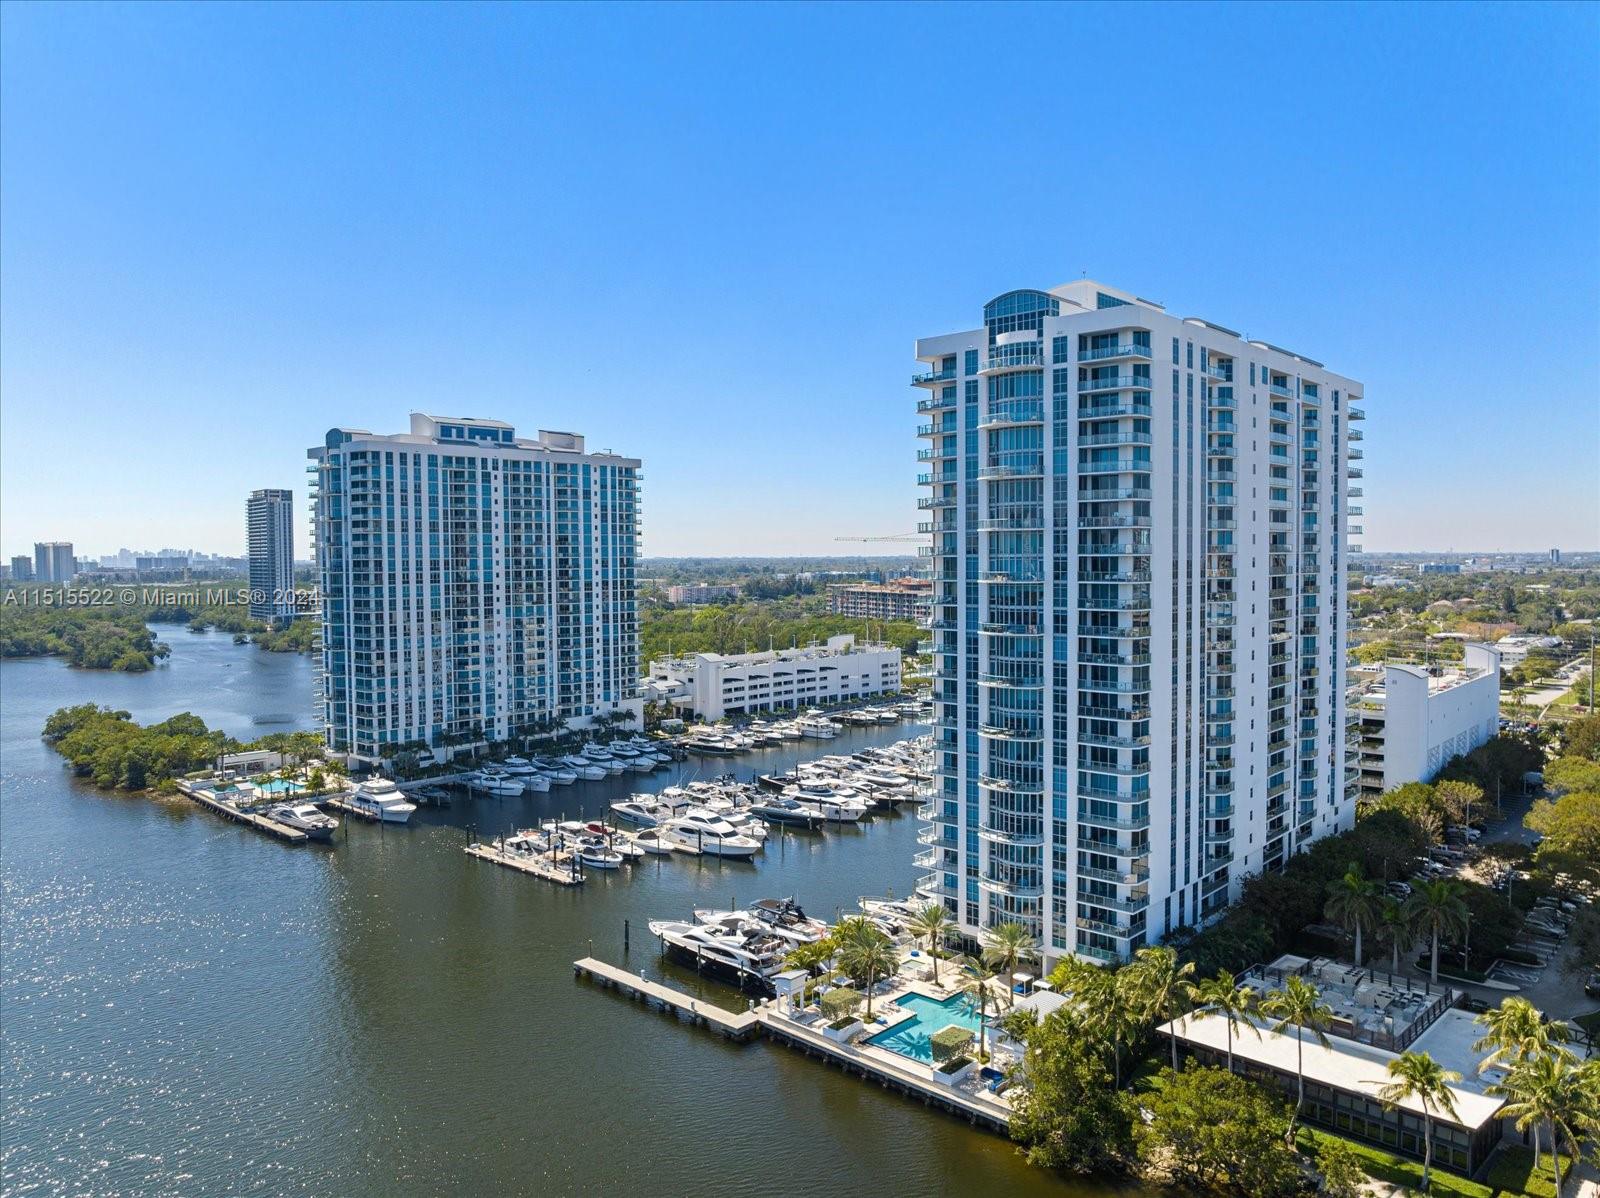 Condo for Rent in North Miami Beach, FL